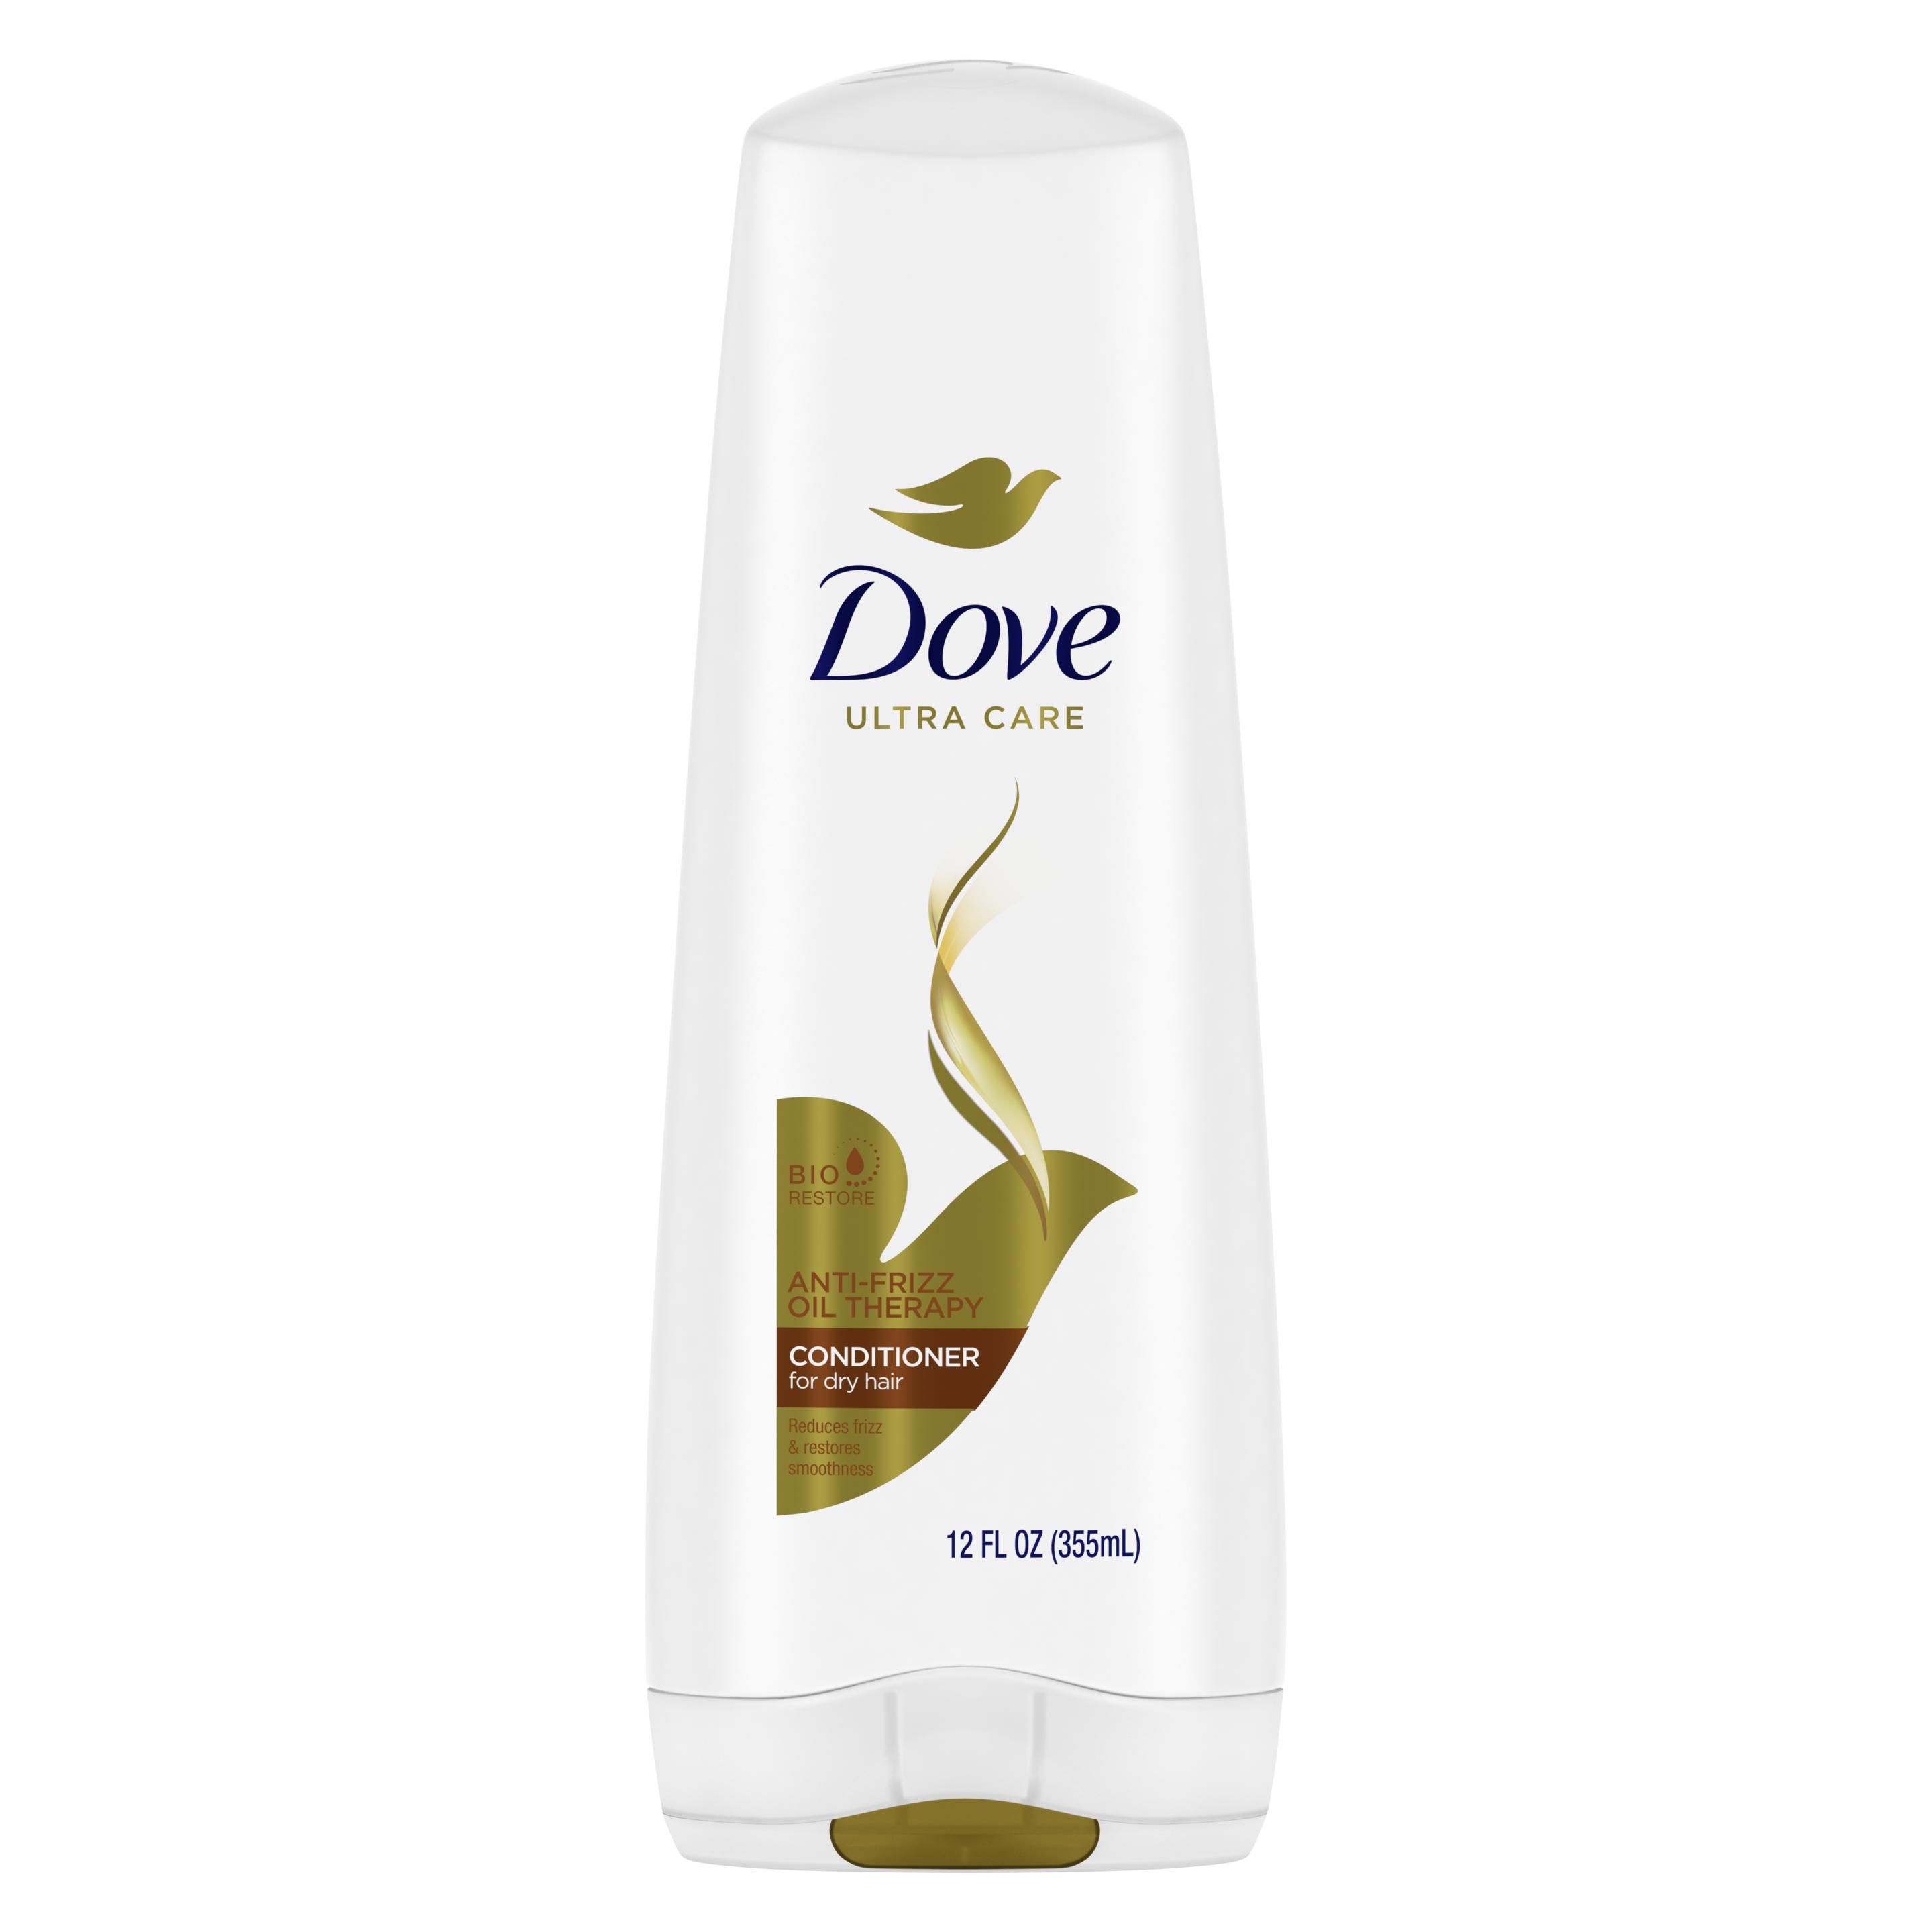 Dove Anti-Frizz Oil Therapy Conditioner 12oz